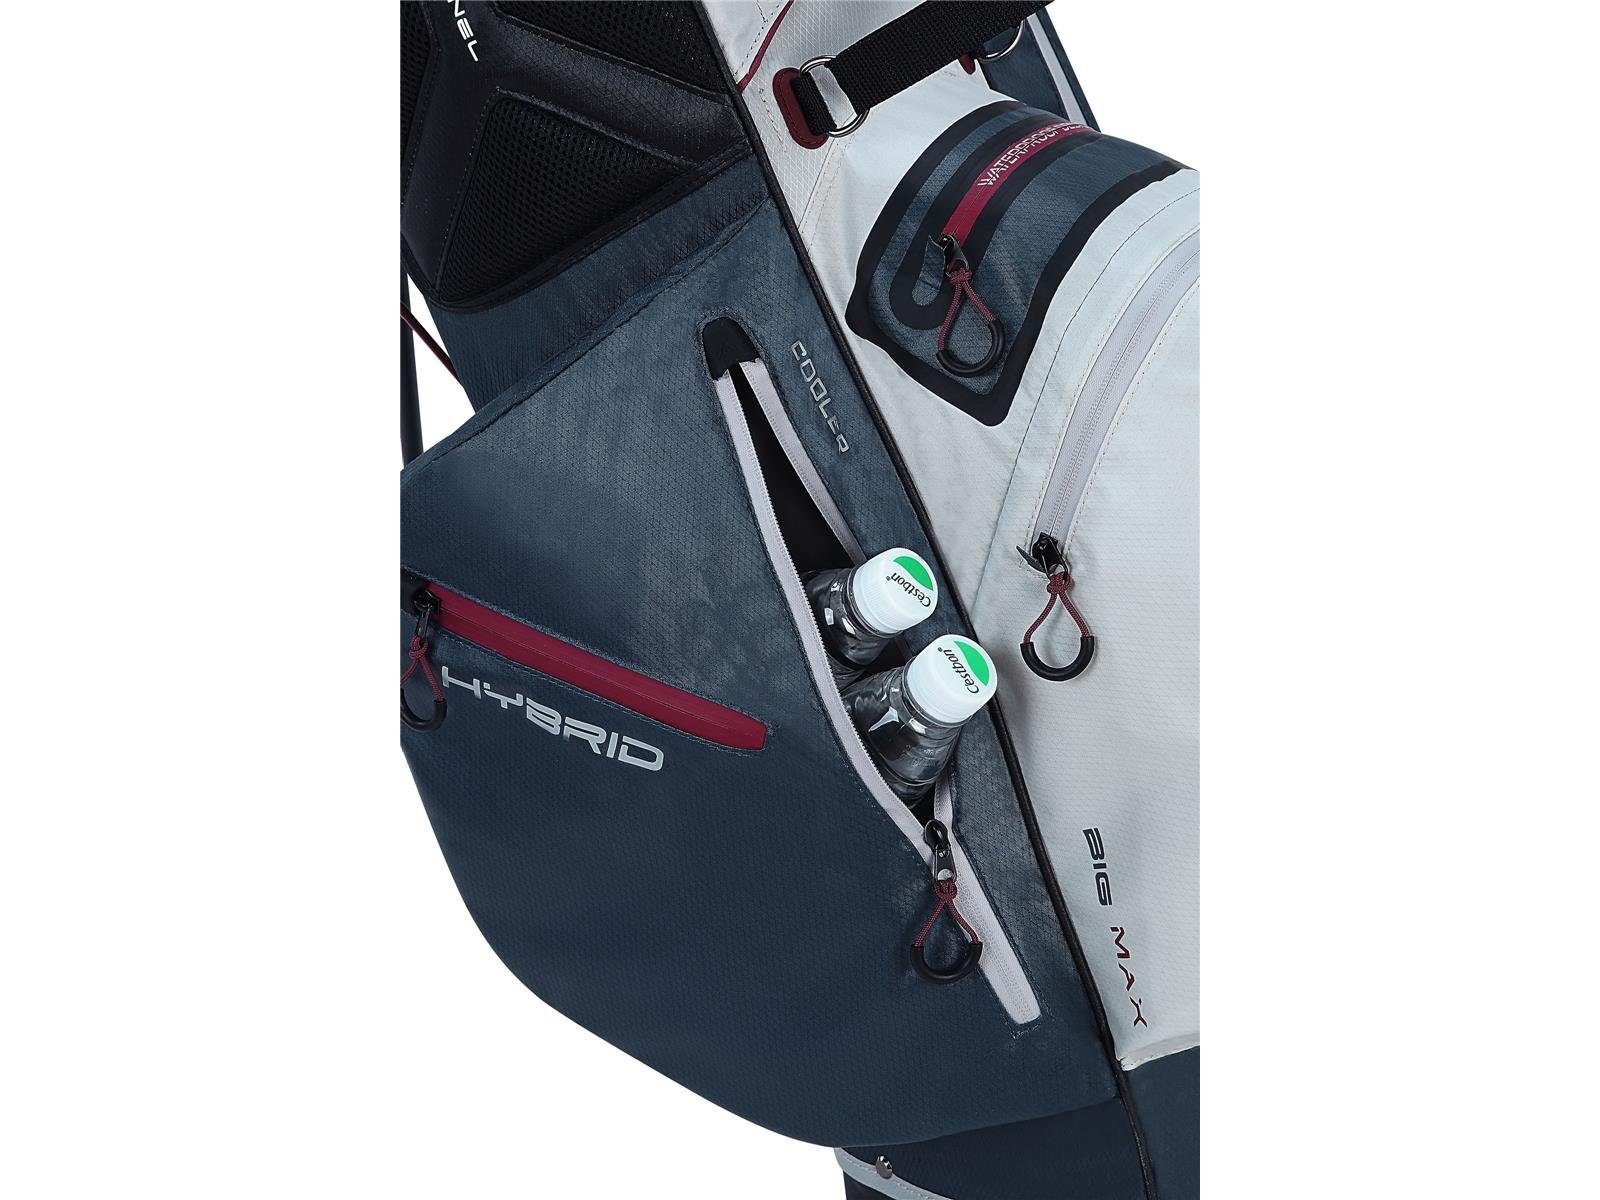 Standbag, MAX Hybrid Max I Big Golf Divider Ständerbag 2 Golfreisetasche BIG Lite Dri 14-fach Wasserabweisend Rot/Schwarz